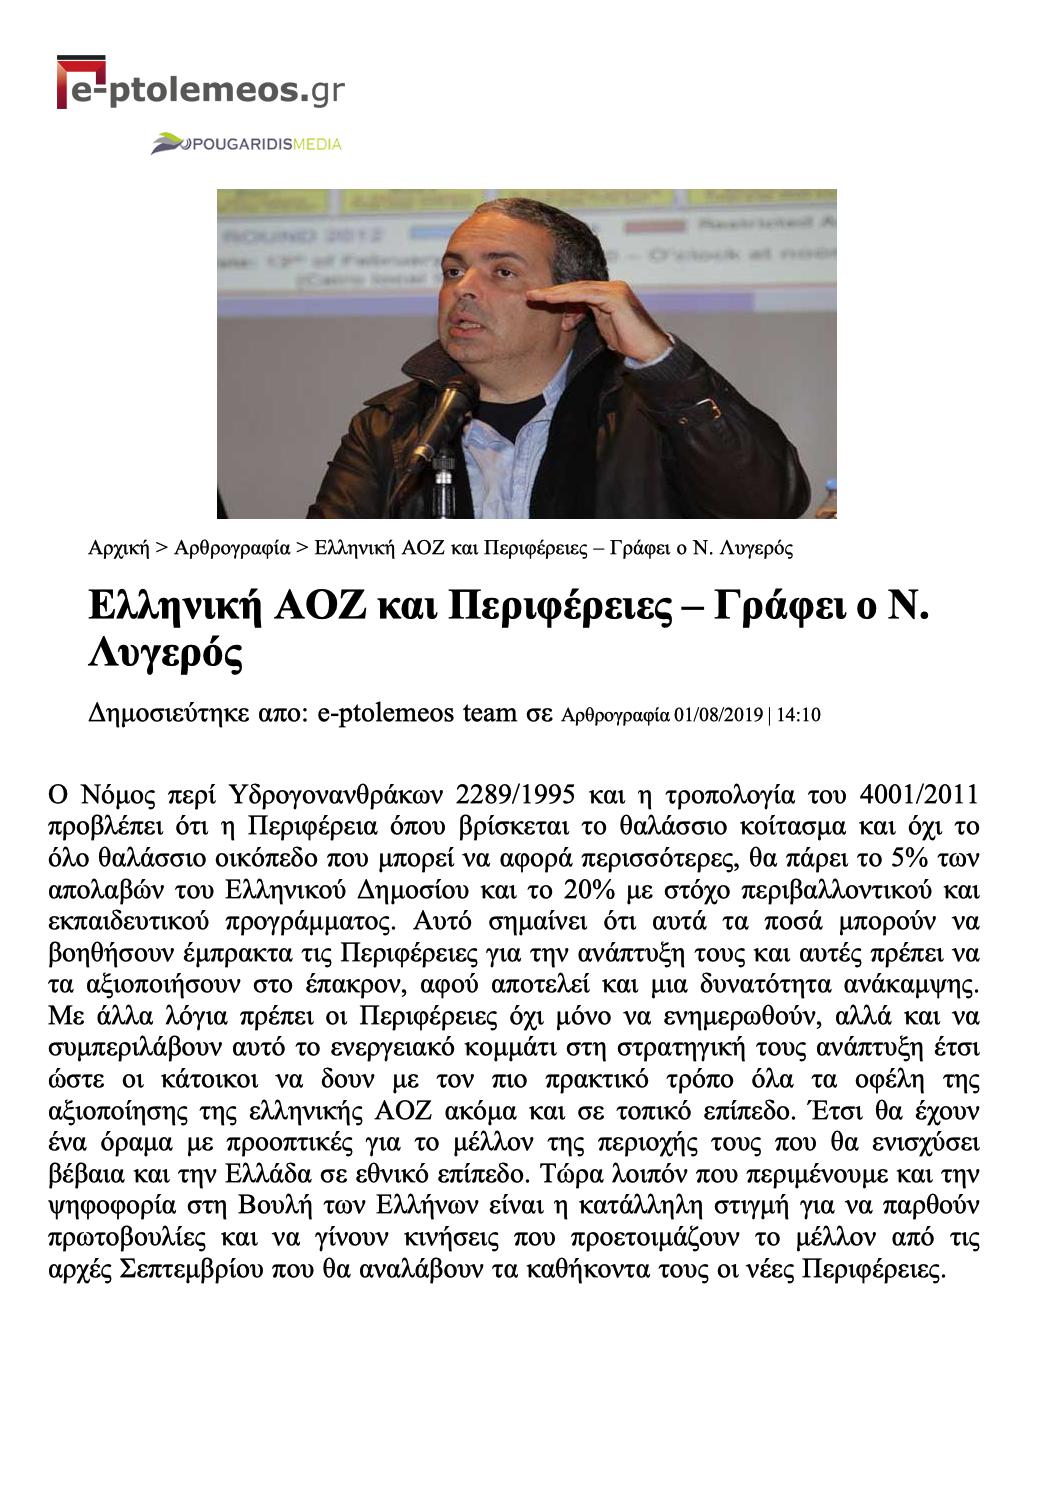 Ελληνική ΑΟΖ και Περιφέρειες, e-ptolemeos, 01/08/2019 - Publication